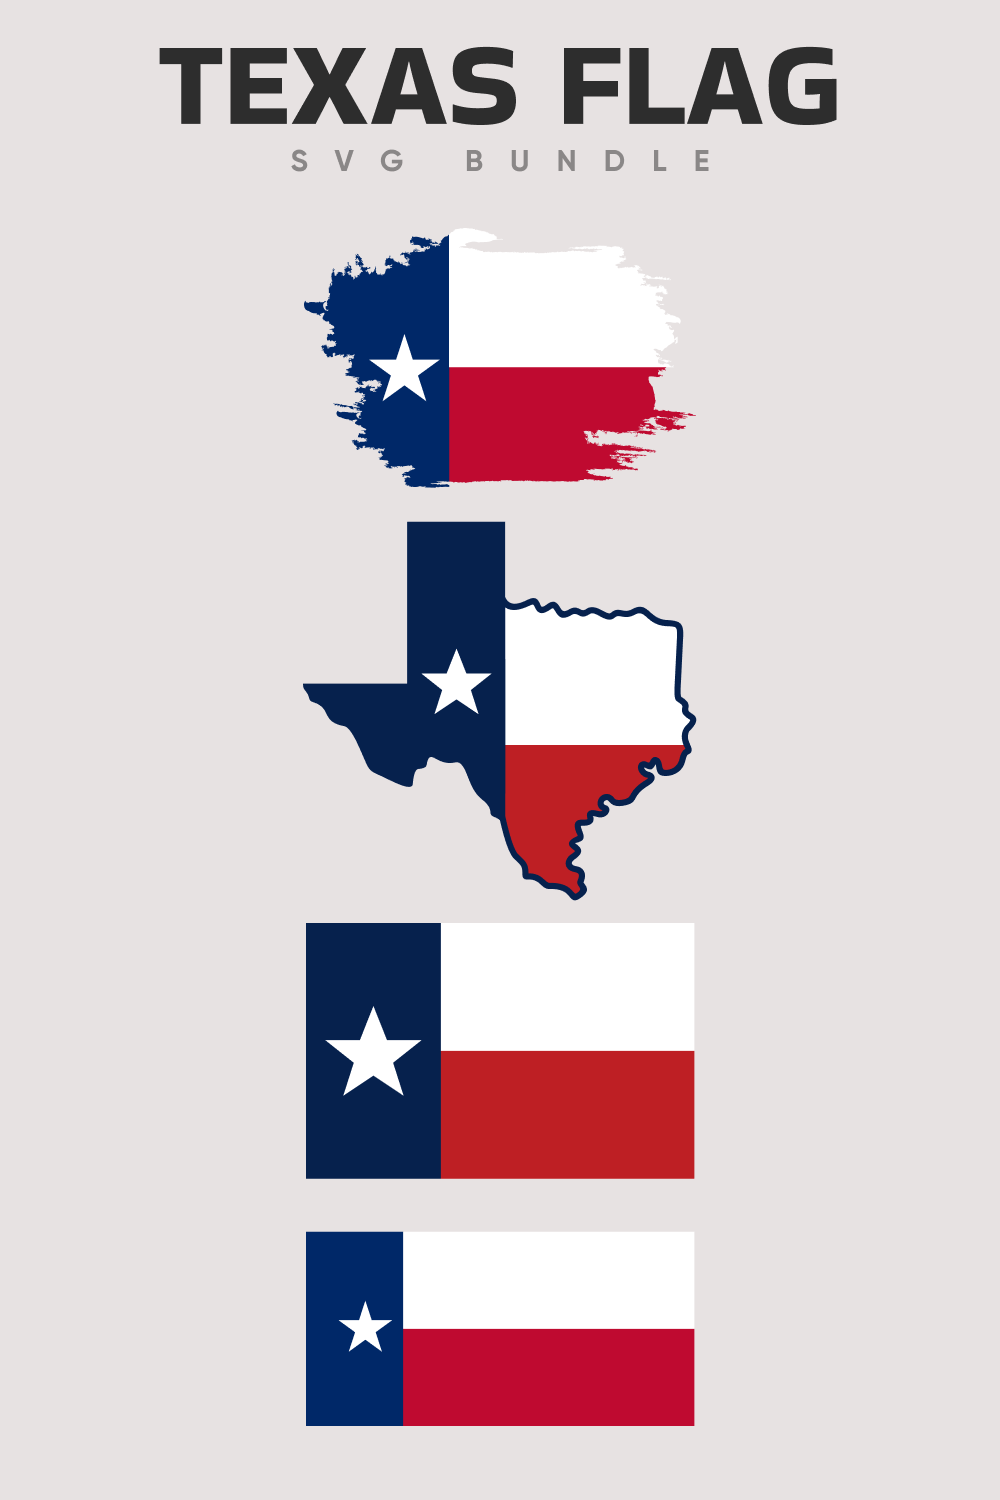 Texas flag svg.